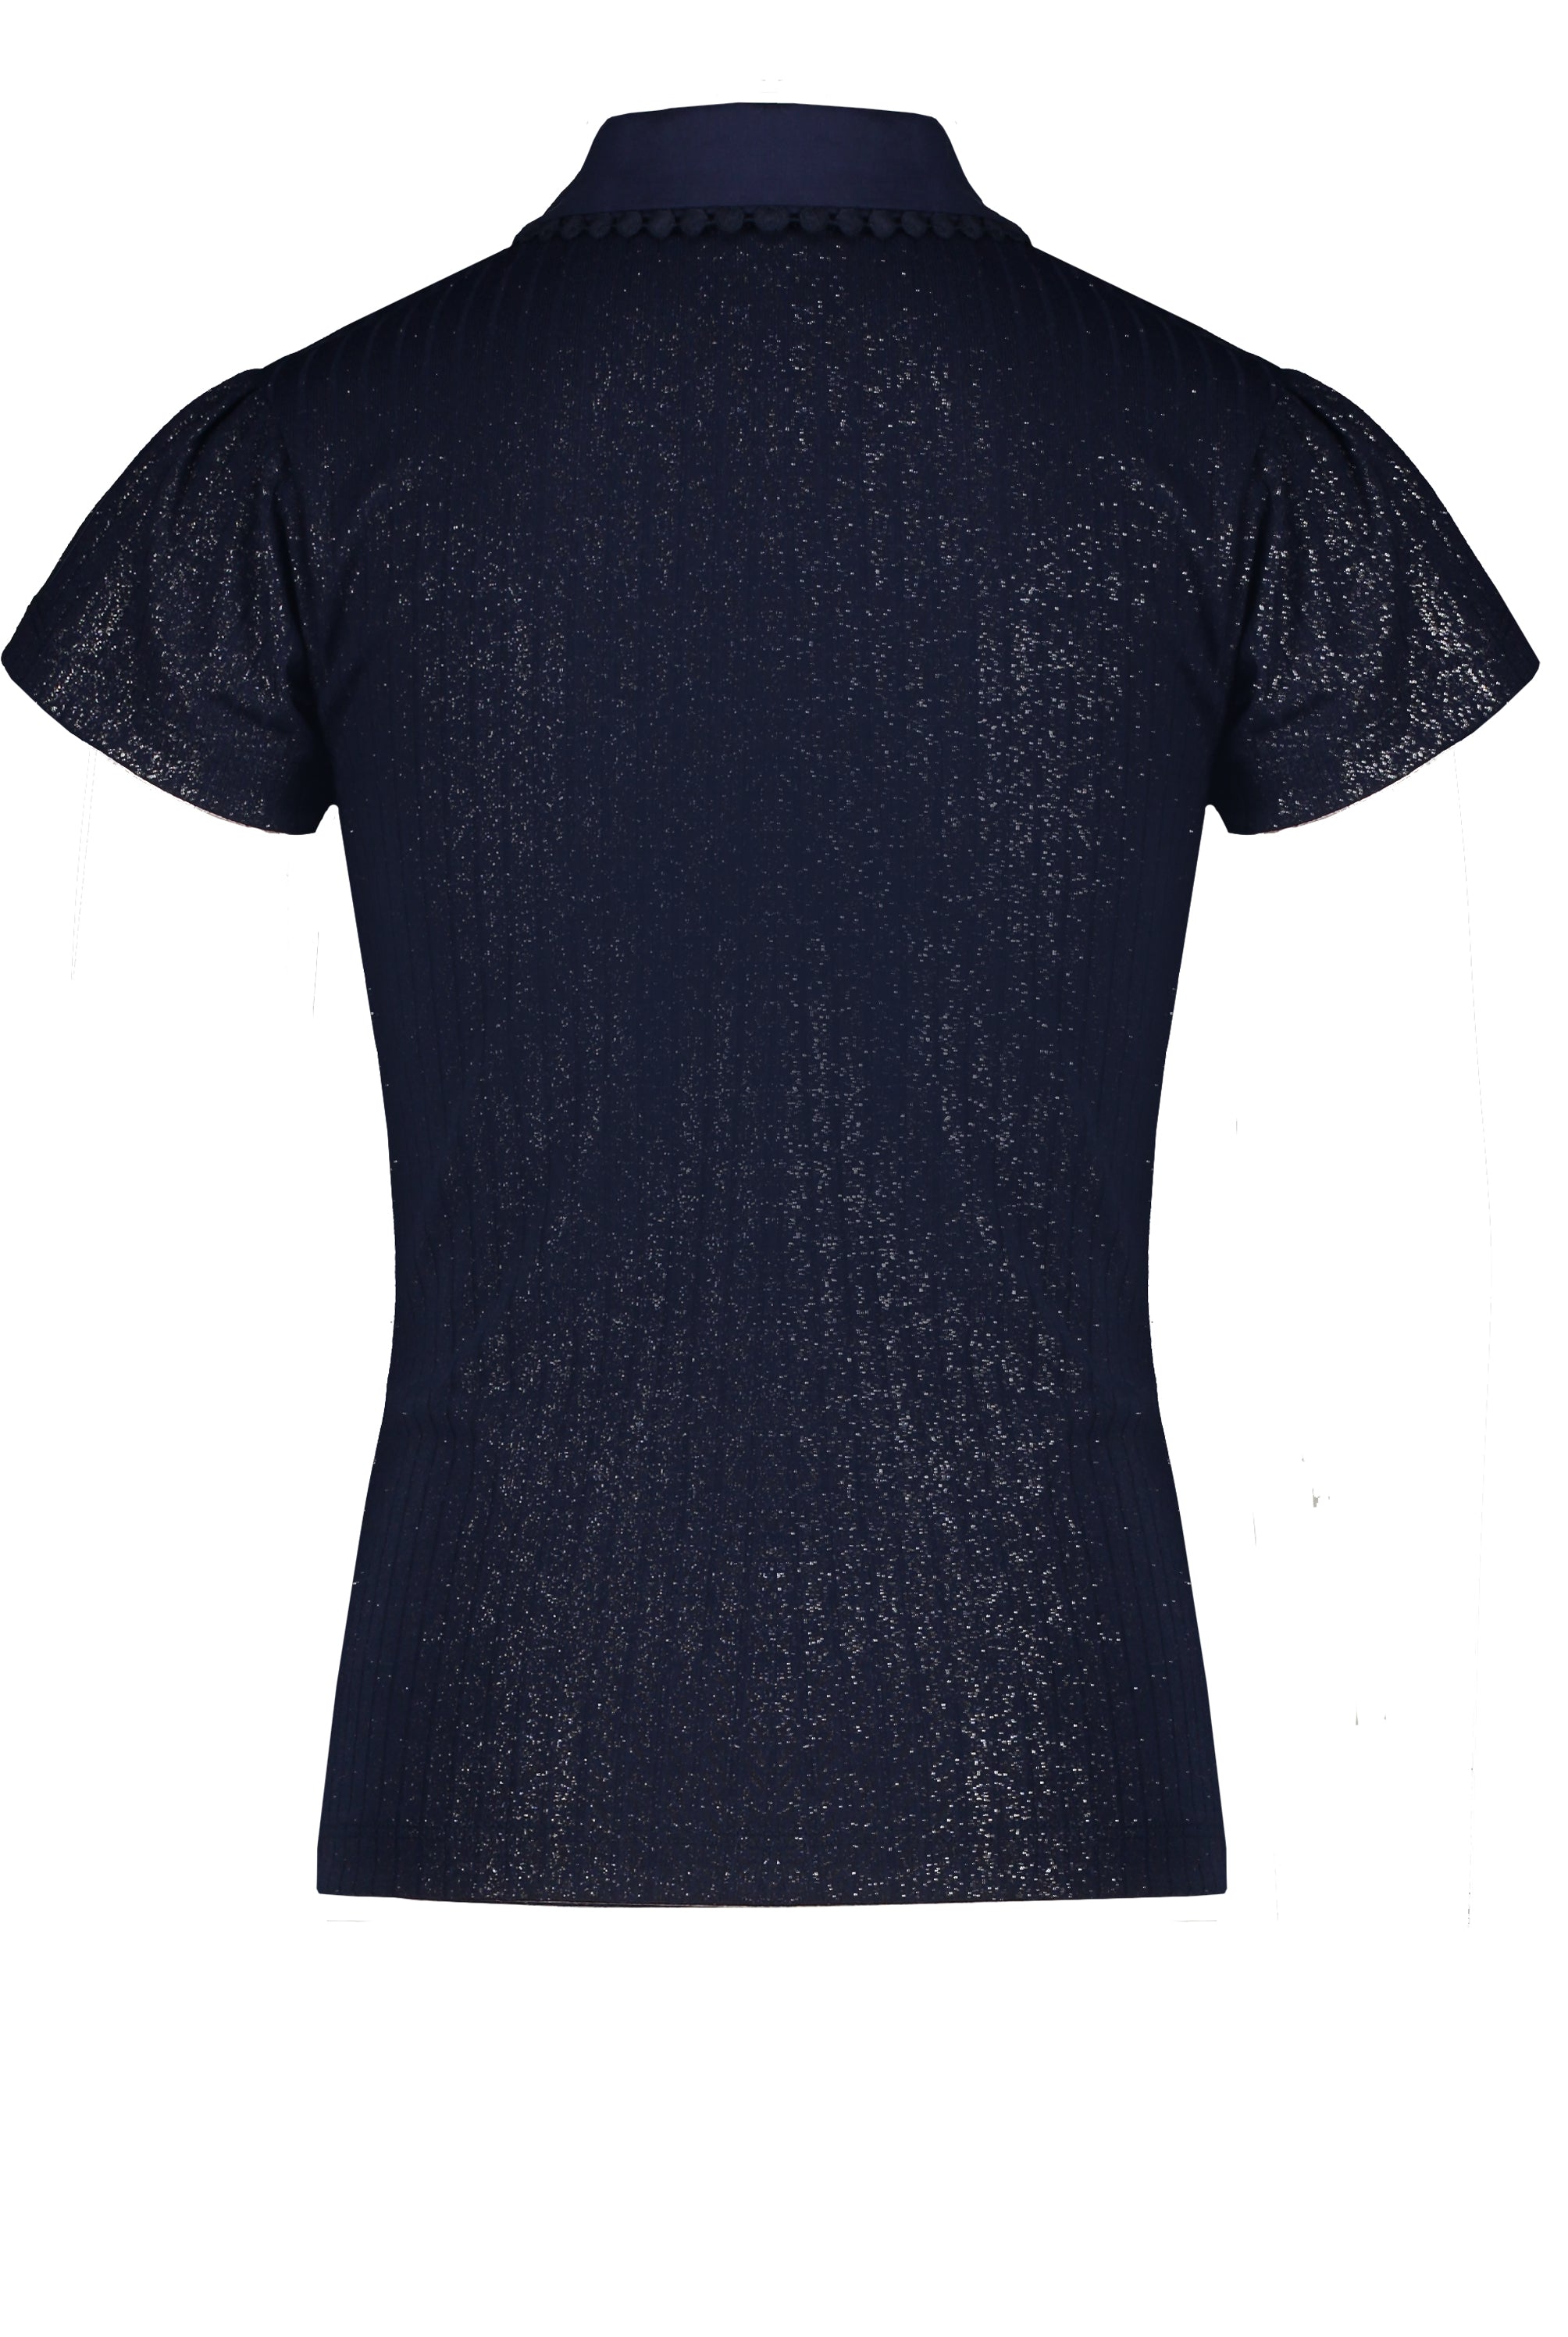 Meisjes Kami foil print rib tshirt s/sl with collar with embro van NoNo in de kleur Navy Blazer in maat 146/152.